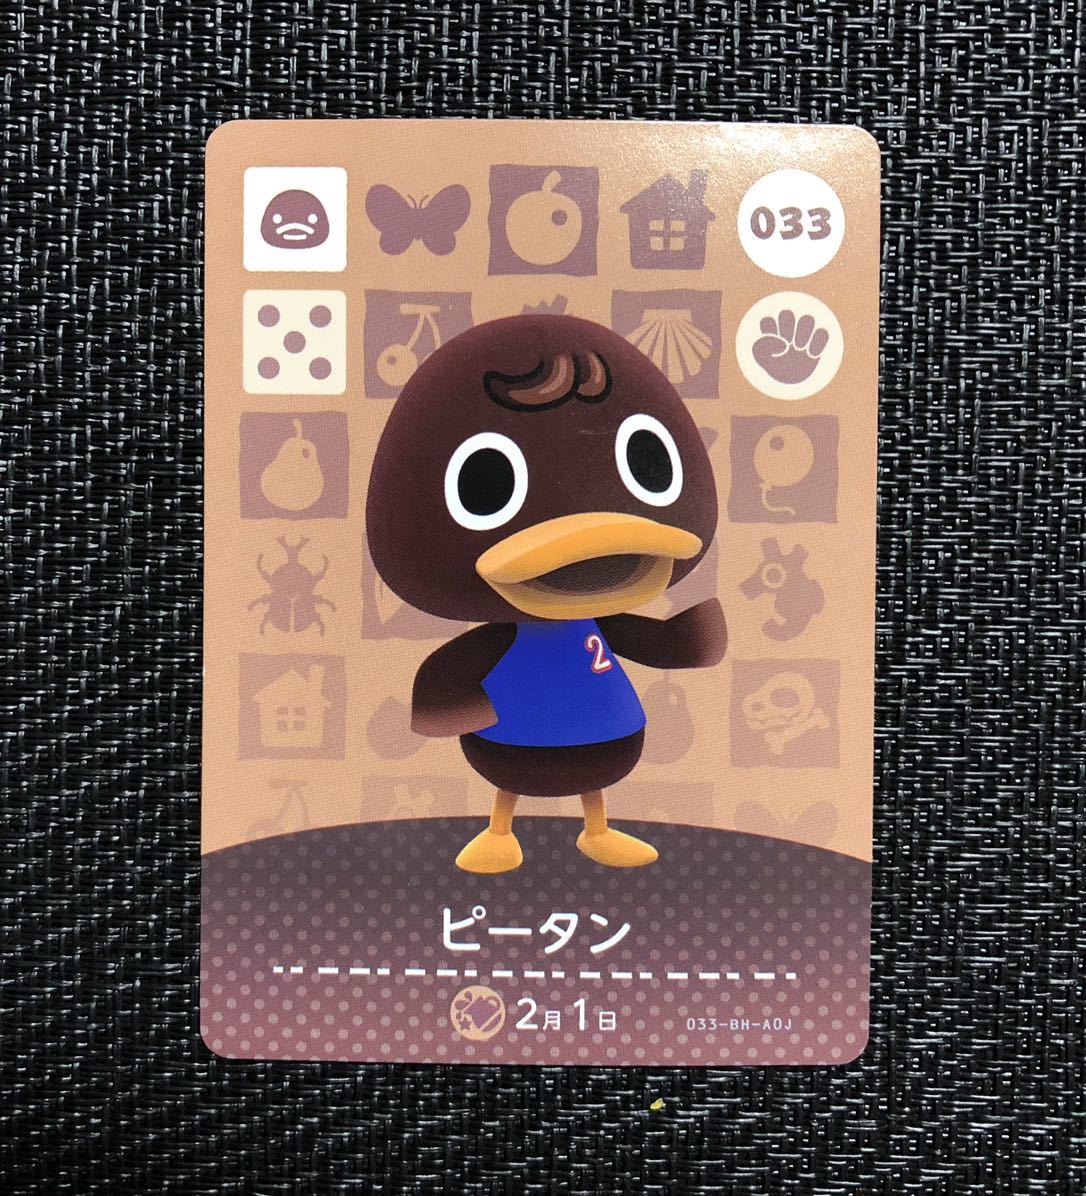 どうぶつの森 amiibo カード 第1弾 033 ピータン アミーボ a003 Nintendo Switch アヒル_画像1